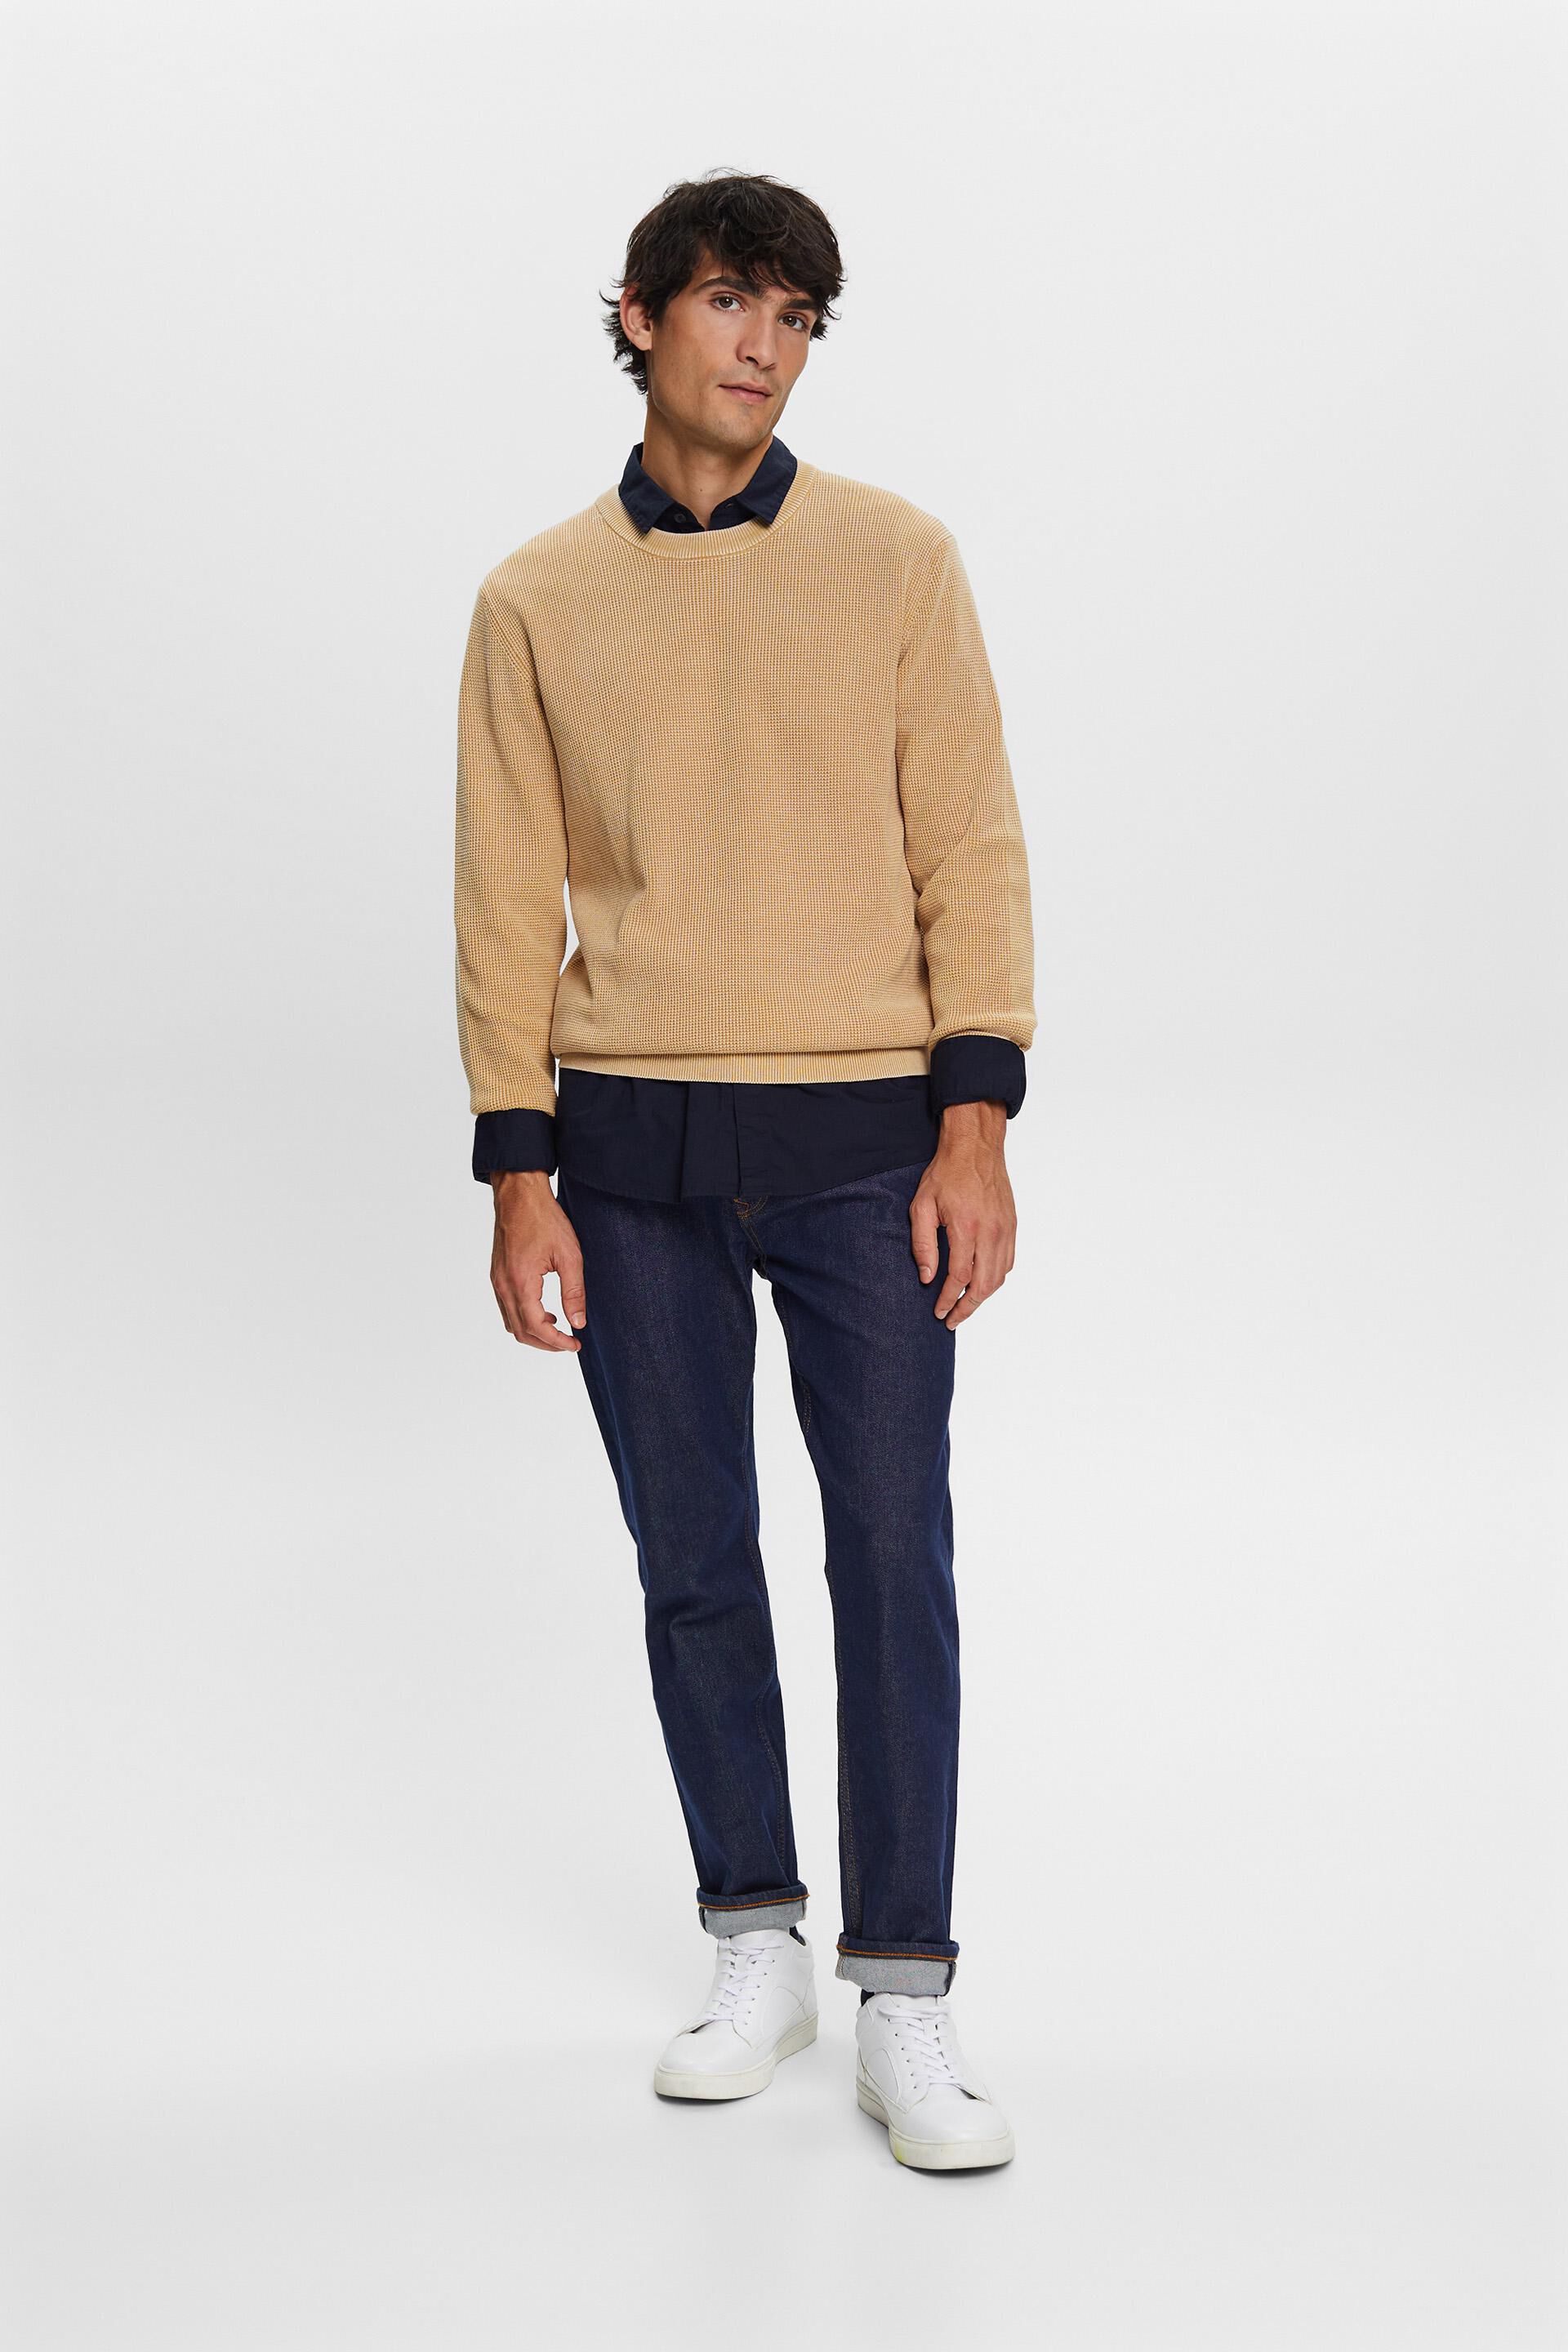 Esprit 100 Basic-Pullover Baumwolle mit Rundhalsausschnitt, %